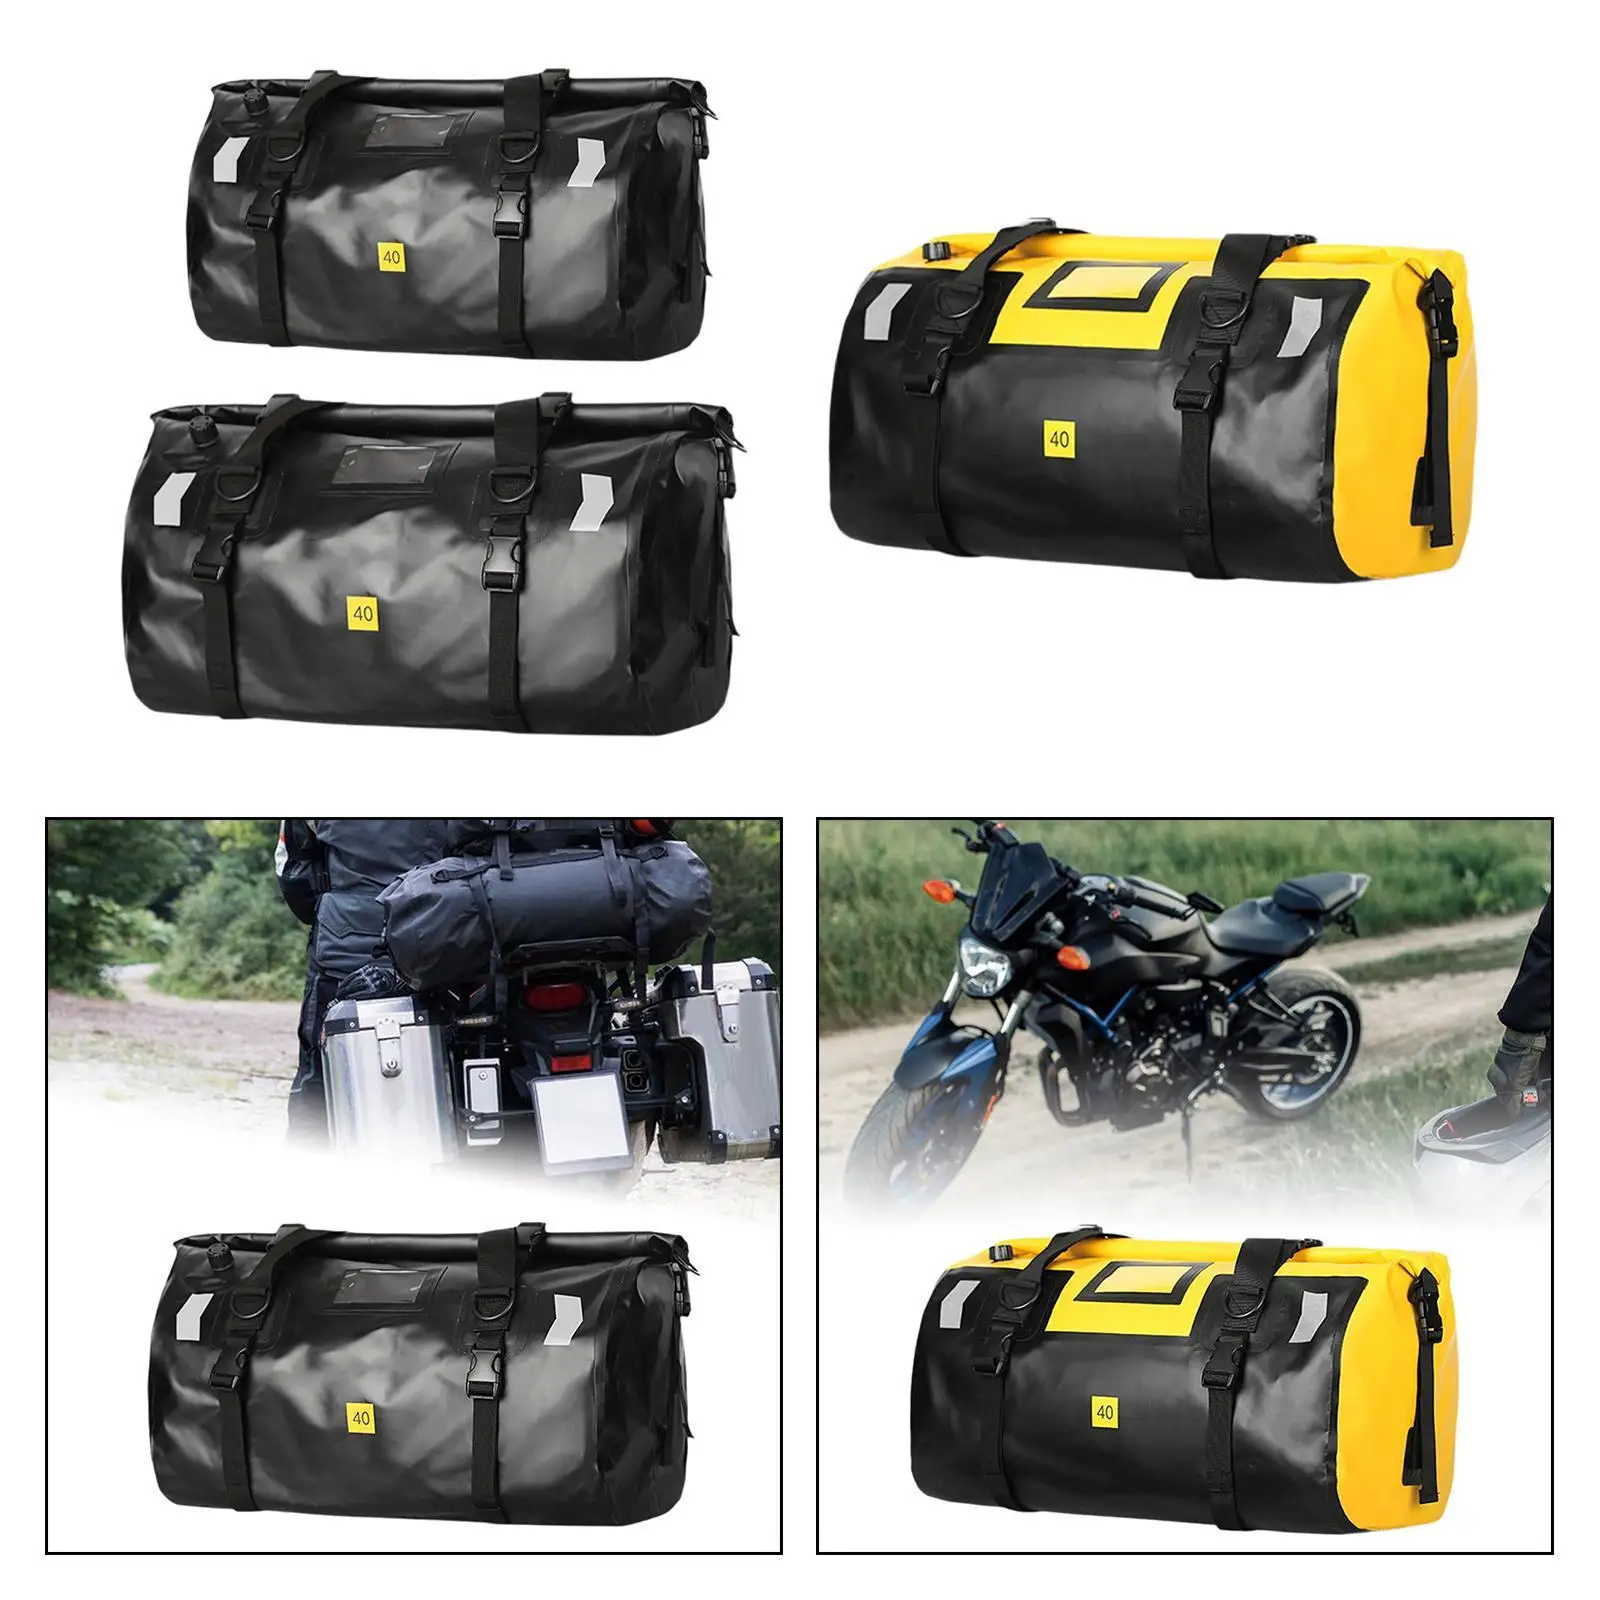 

Мотоциклетная задняя Сумка, водонепроницаемая портативная прочная мотоциклетная сумка для багажа